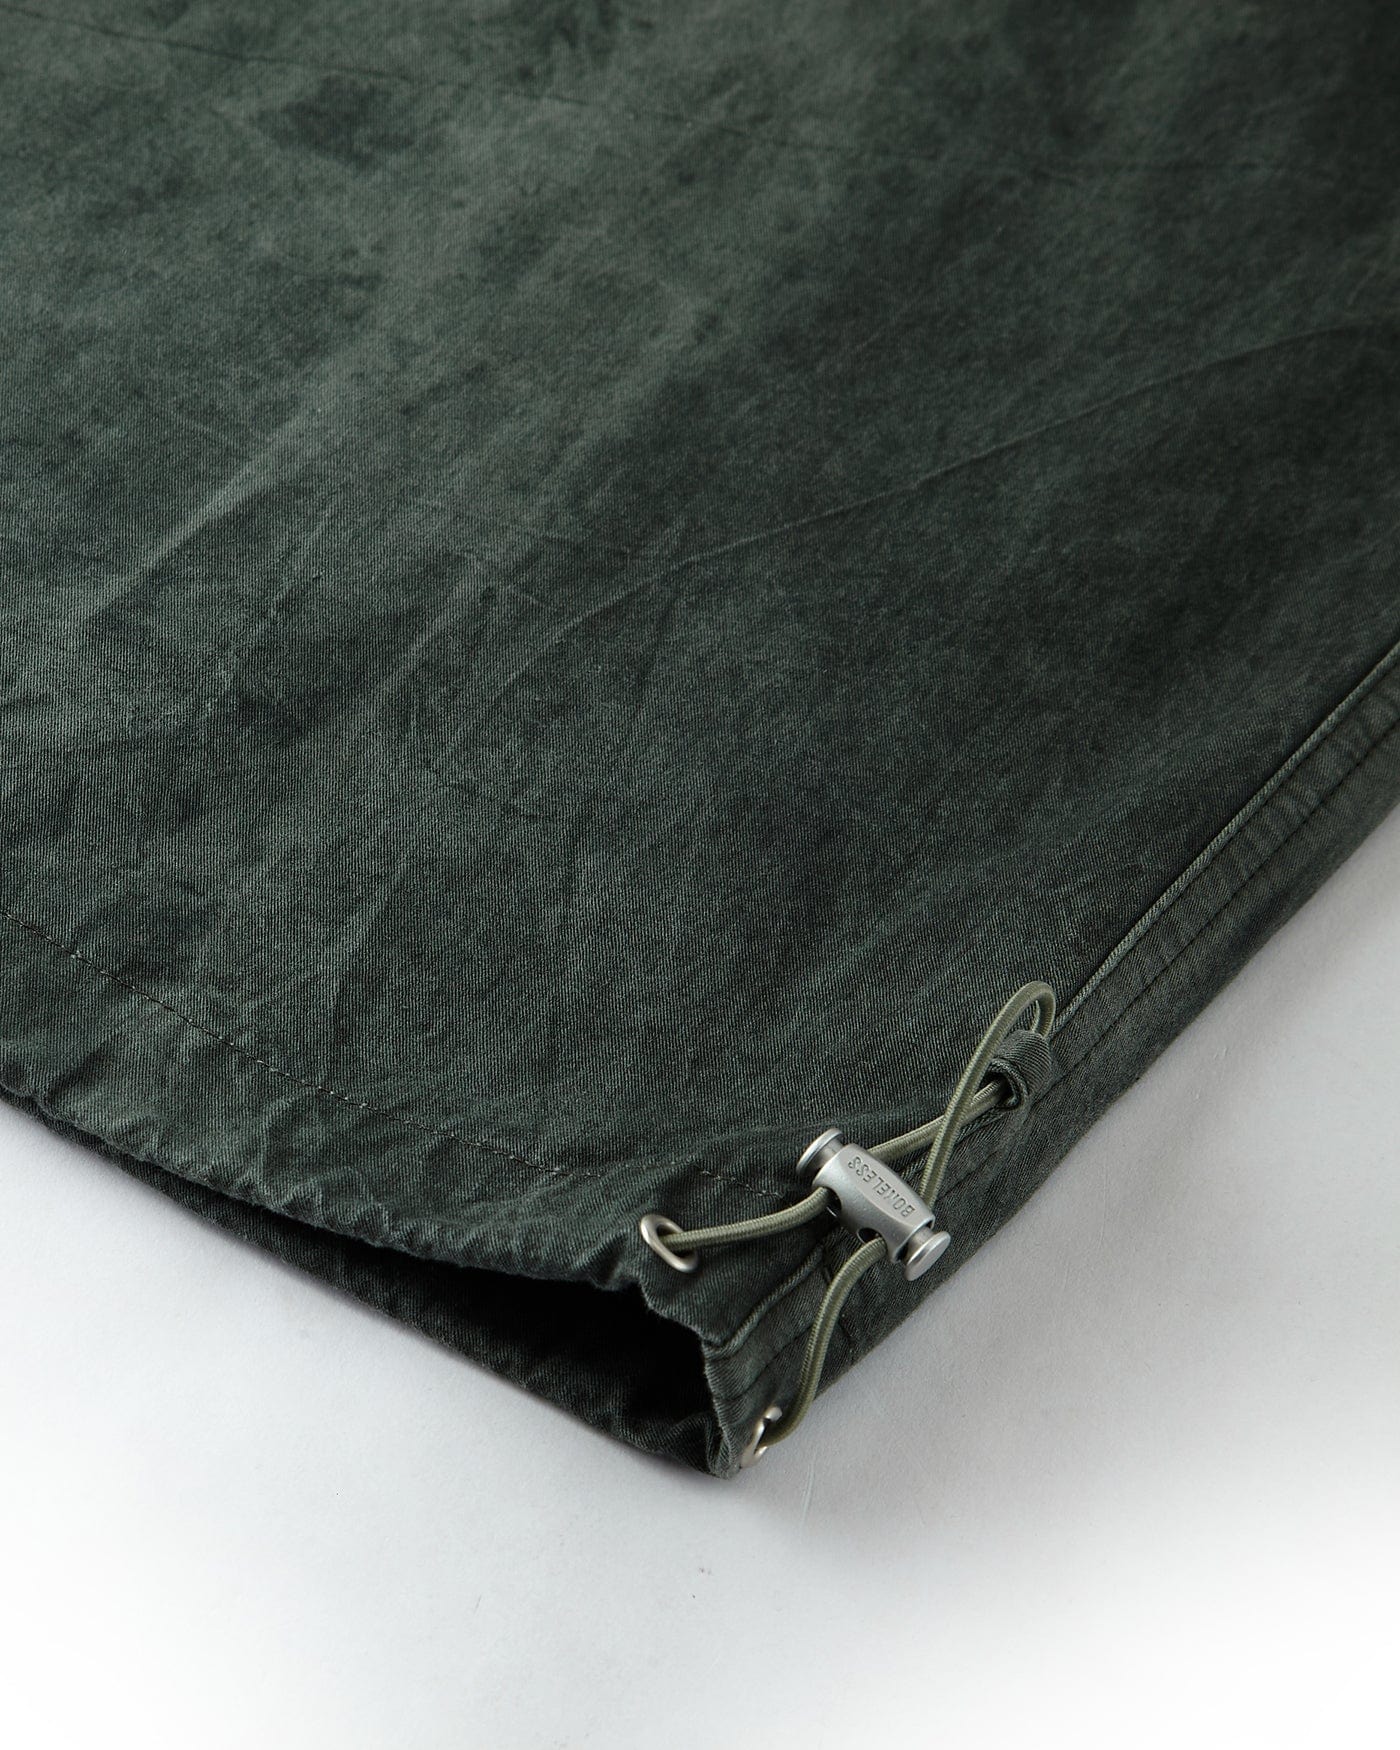 BONELESS Washed Multi-Pocket Crinkled Cargo Pants